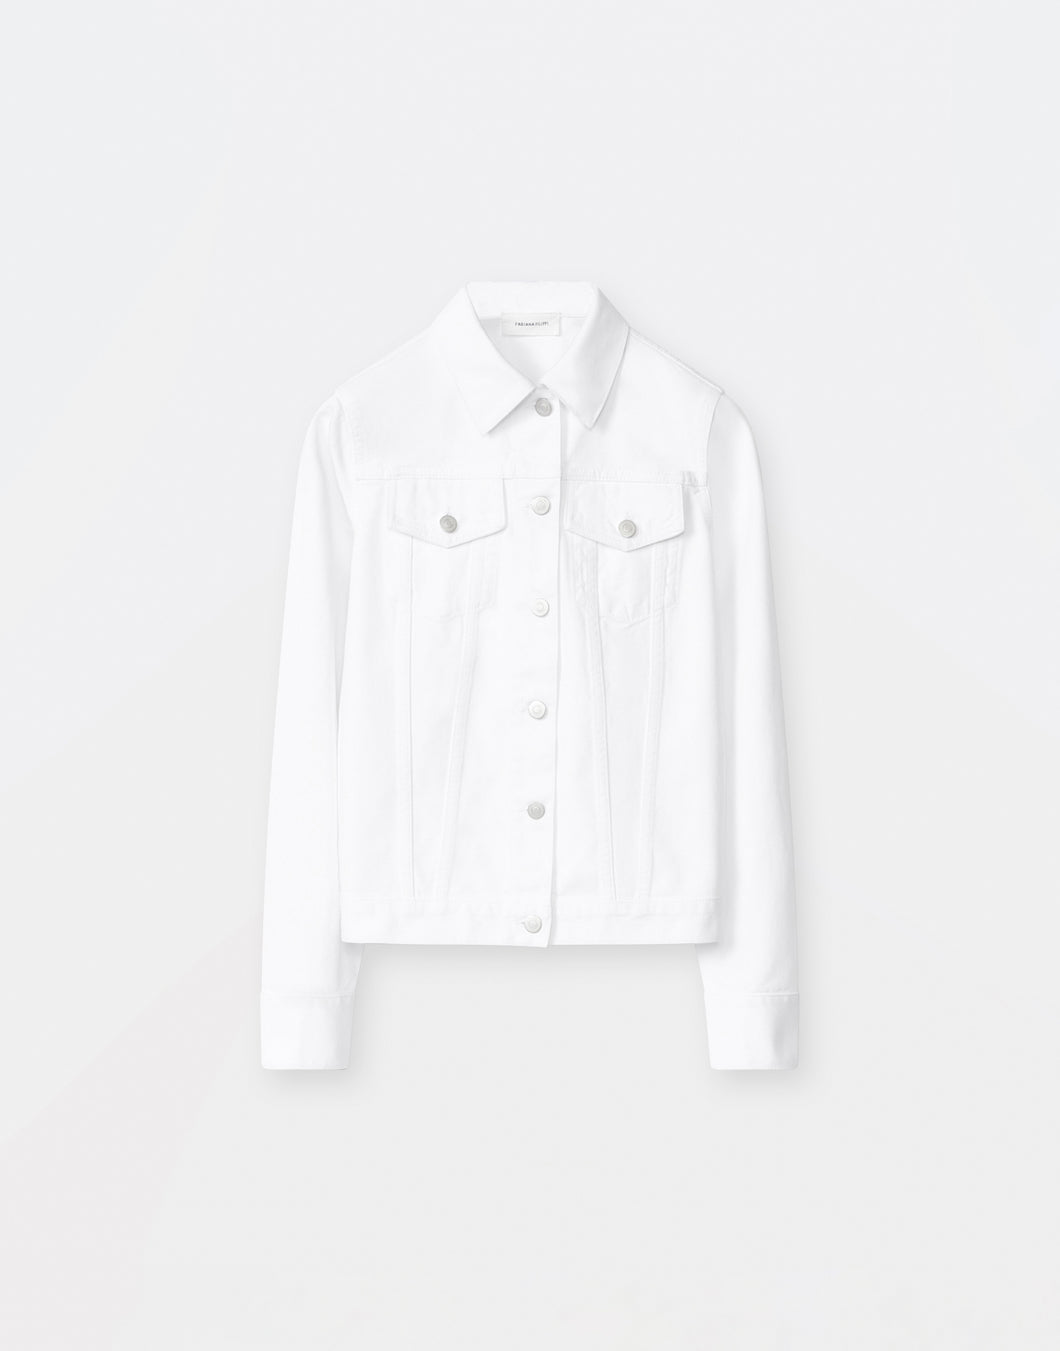 Denim jacket, white